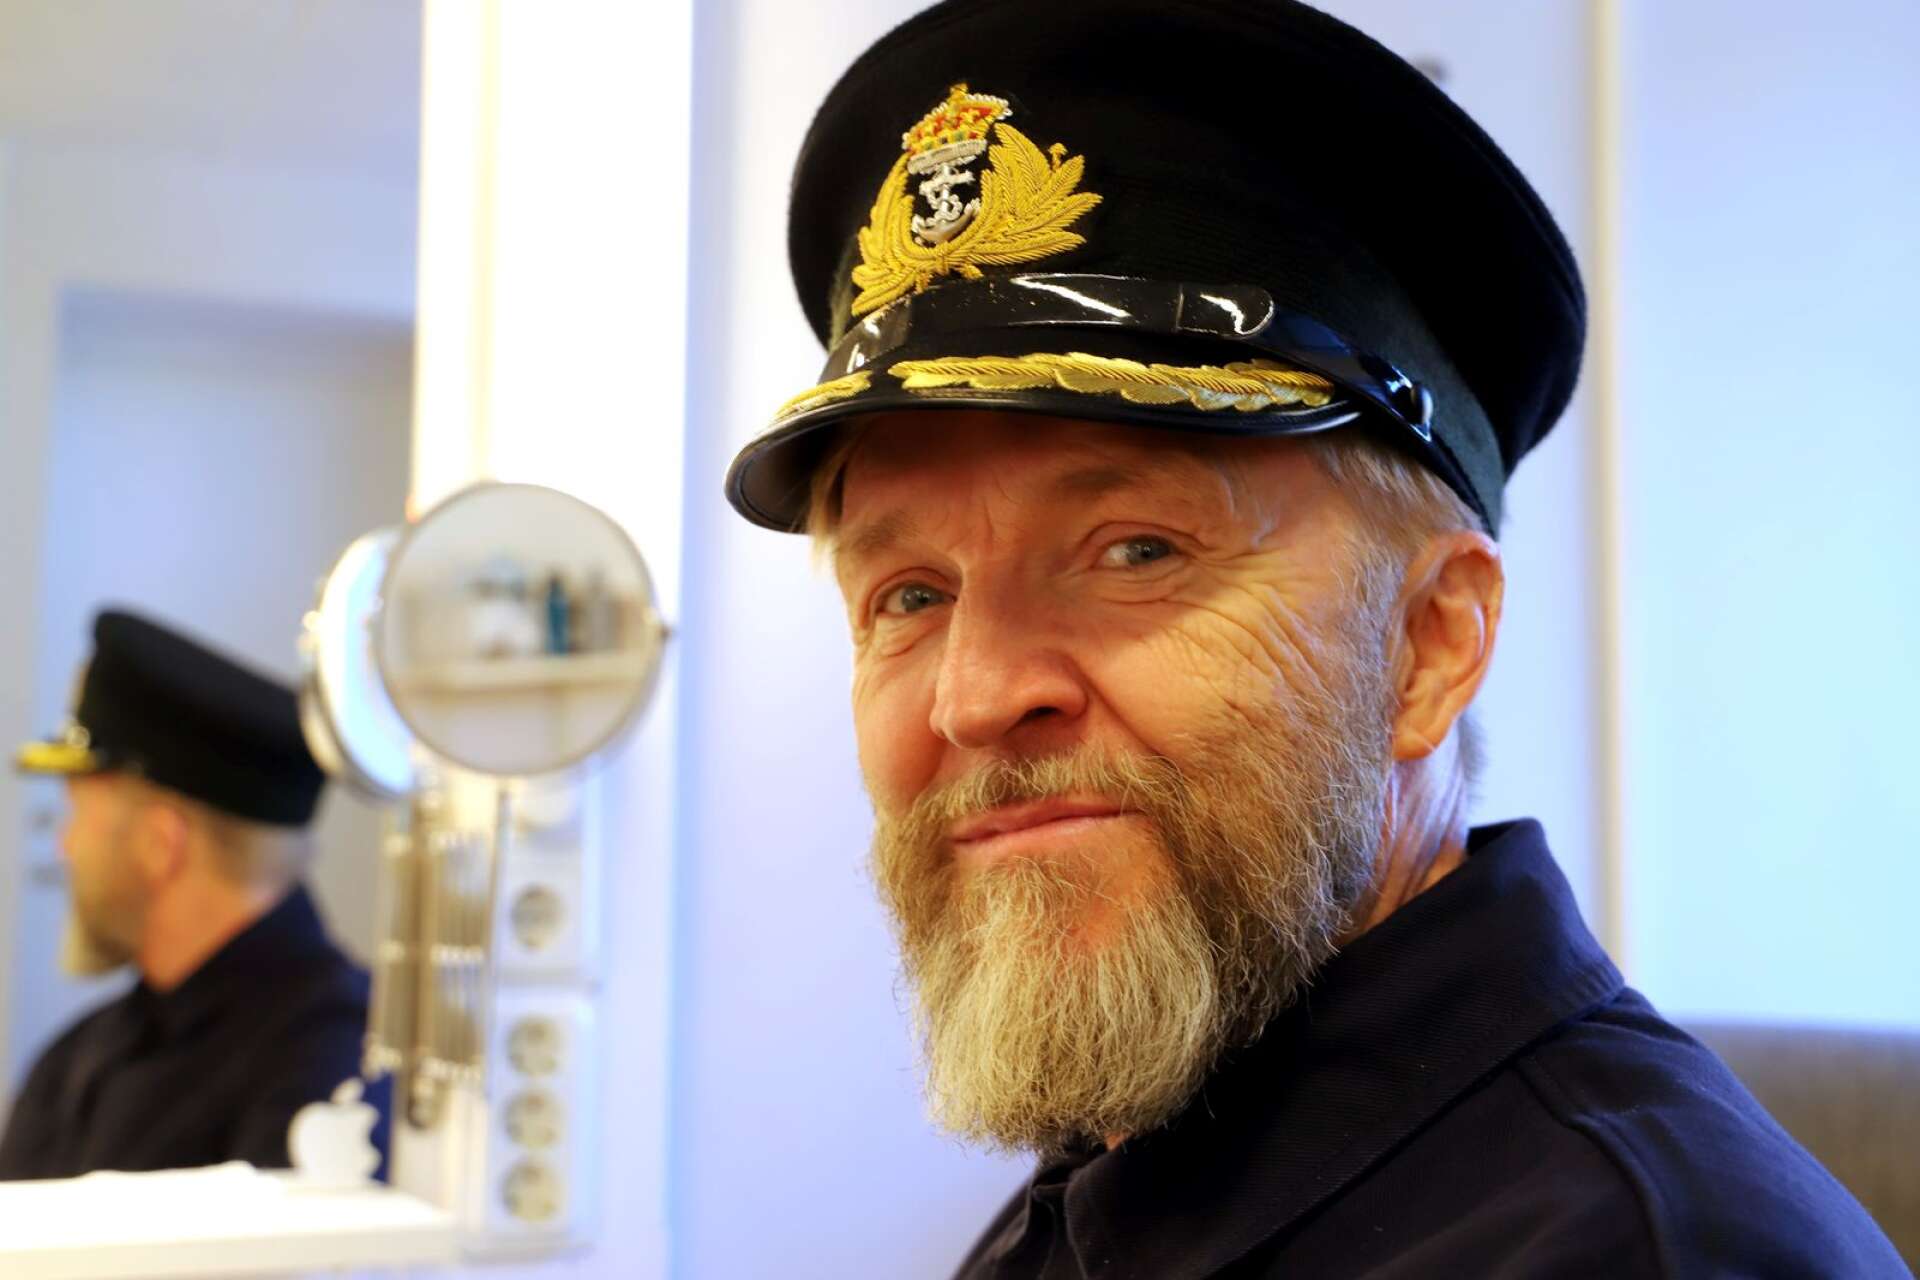 Efter operan Eurydike med dödsriket som spelplats väntade en musikal om Titanickatastrofen på Wermland opera. Timo Nieminen gör rollen som kapten Smith.